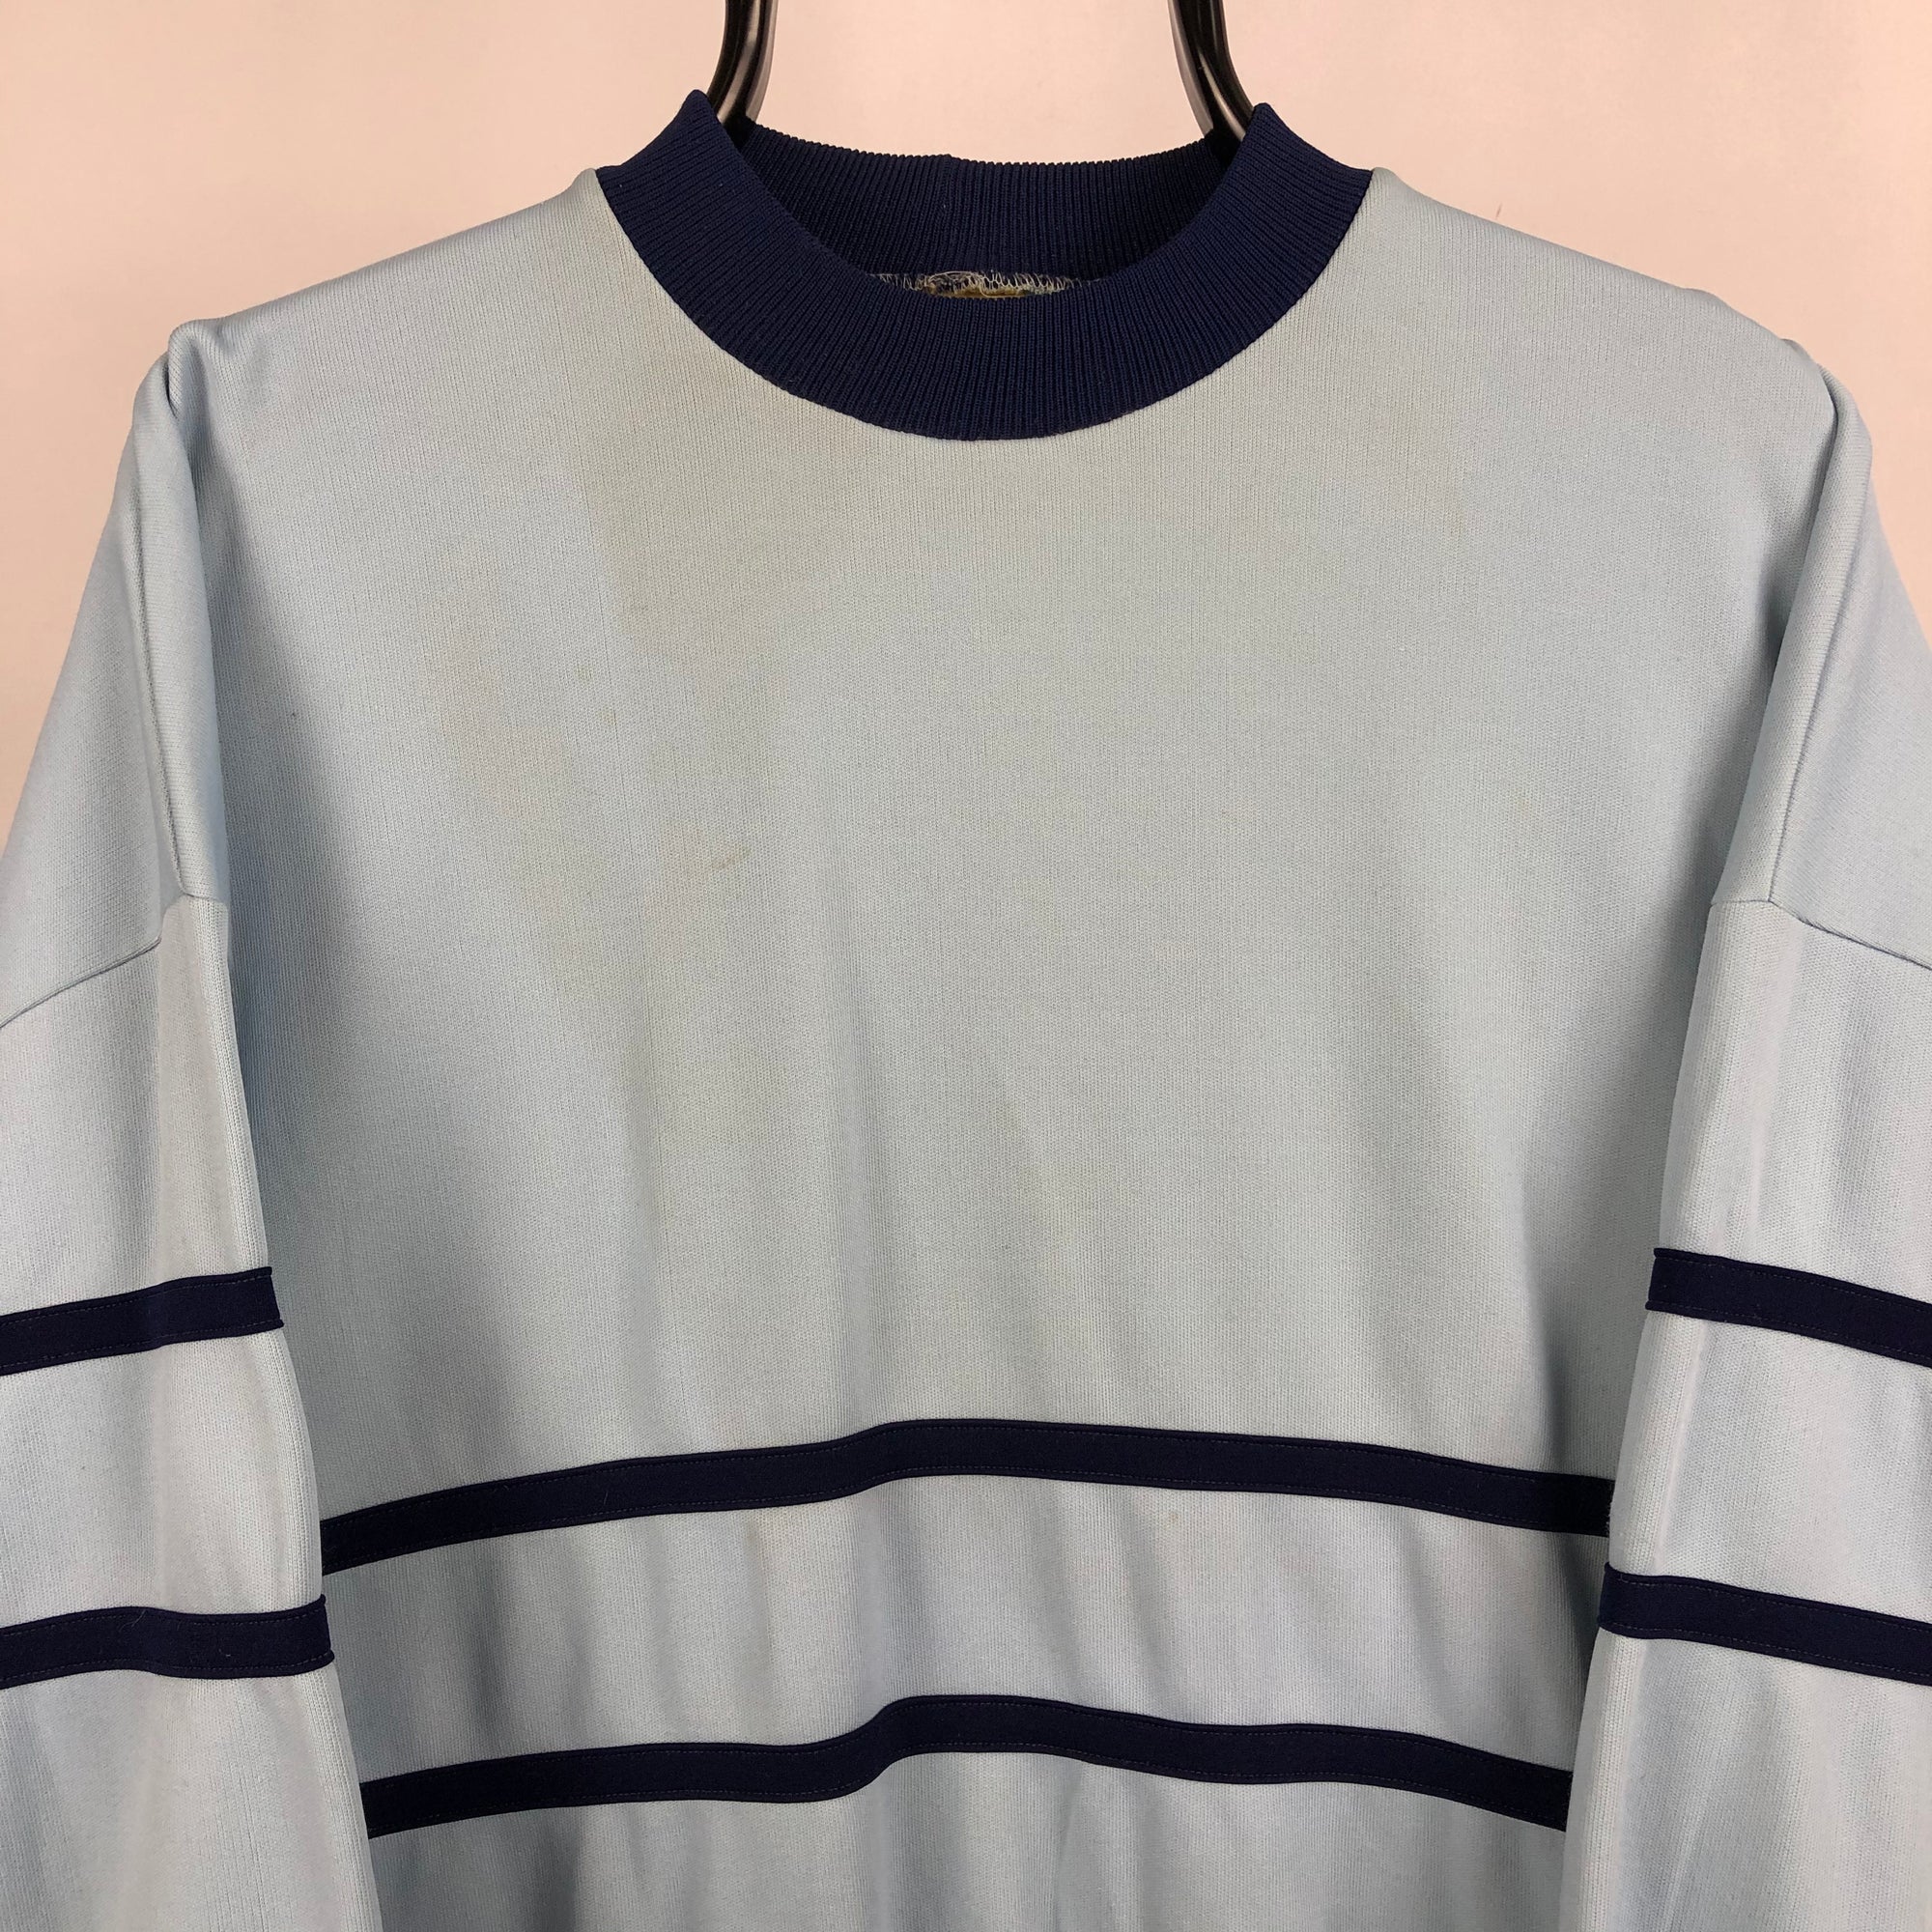 Vintage 80s Sweatshirt in Baby Blue/Navy - Men's Medium/Women's Large